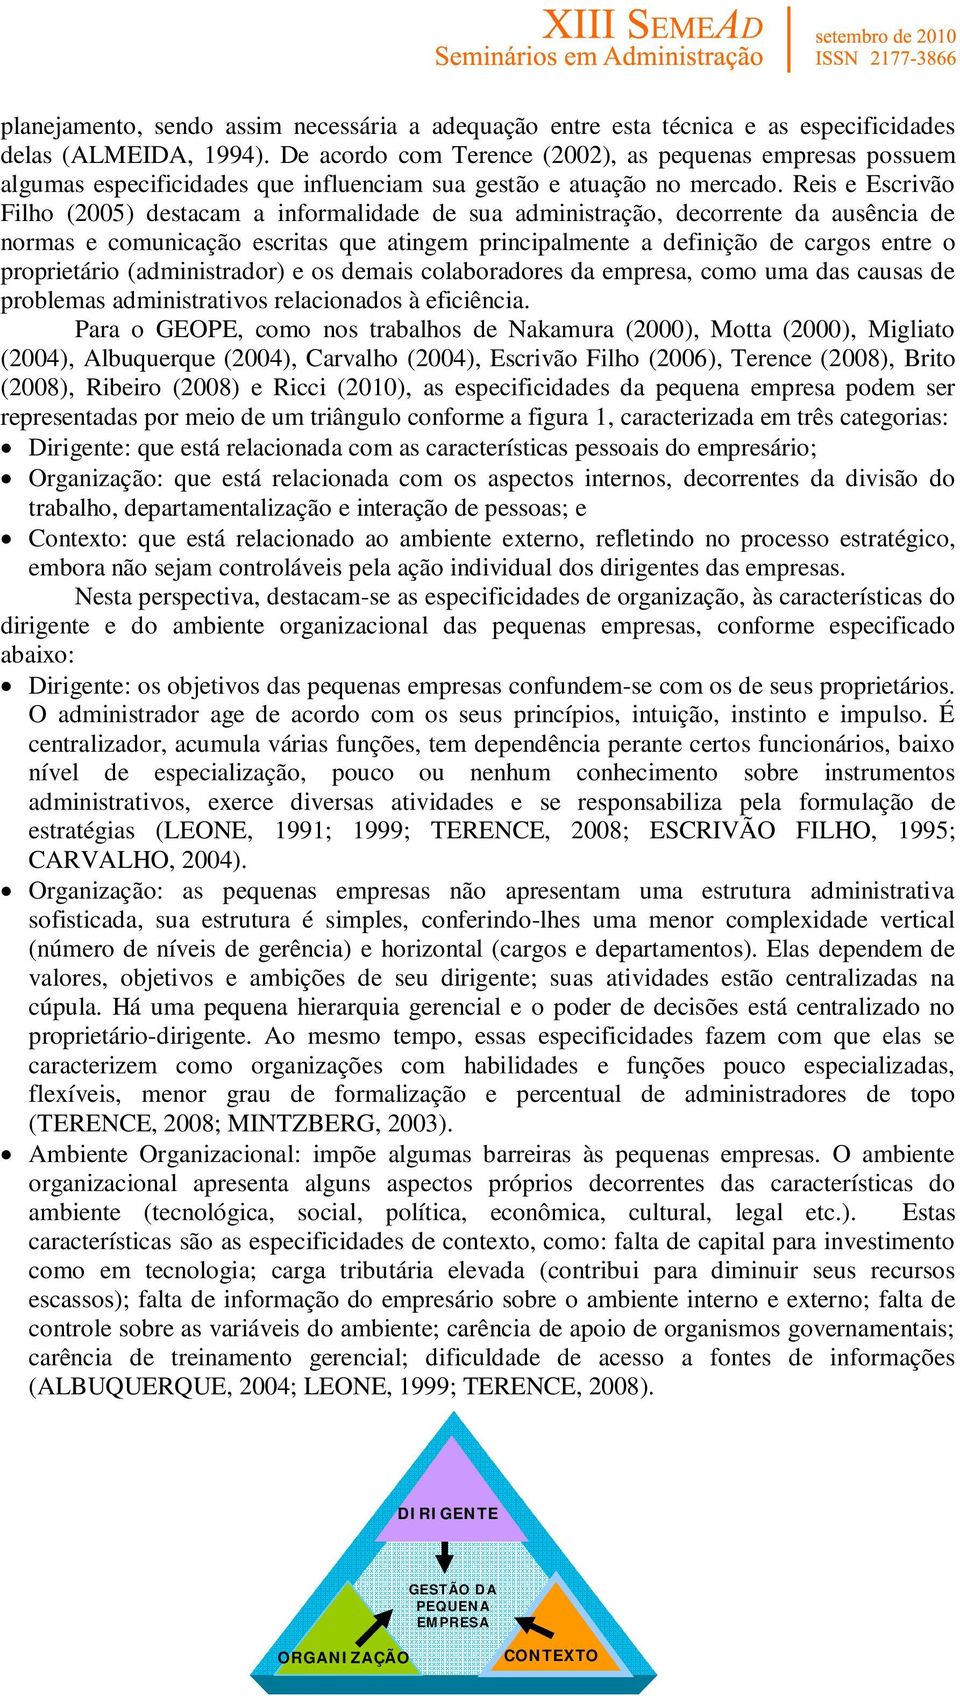 Reis e Escrivão Filho (2005) destacam a informalidade de sua administração, decorrente da ausência de normas e comunicação escritas que atingem principalmente a definição de cargos entre o